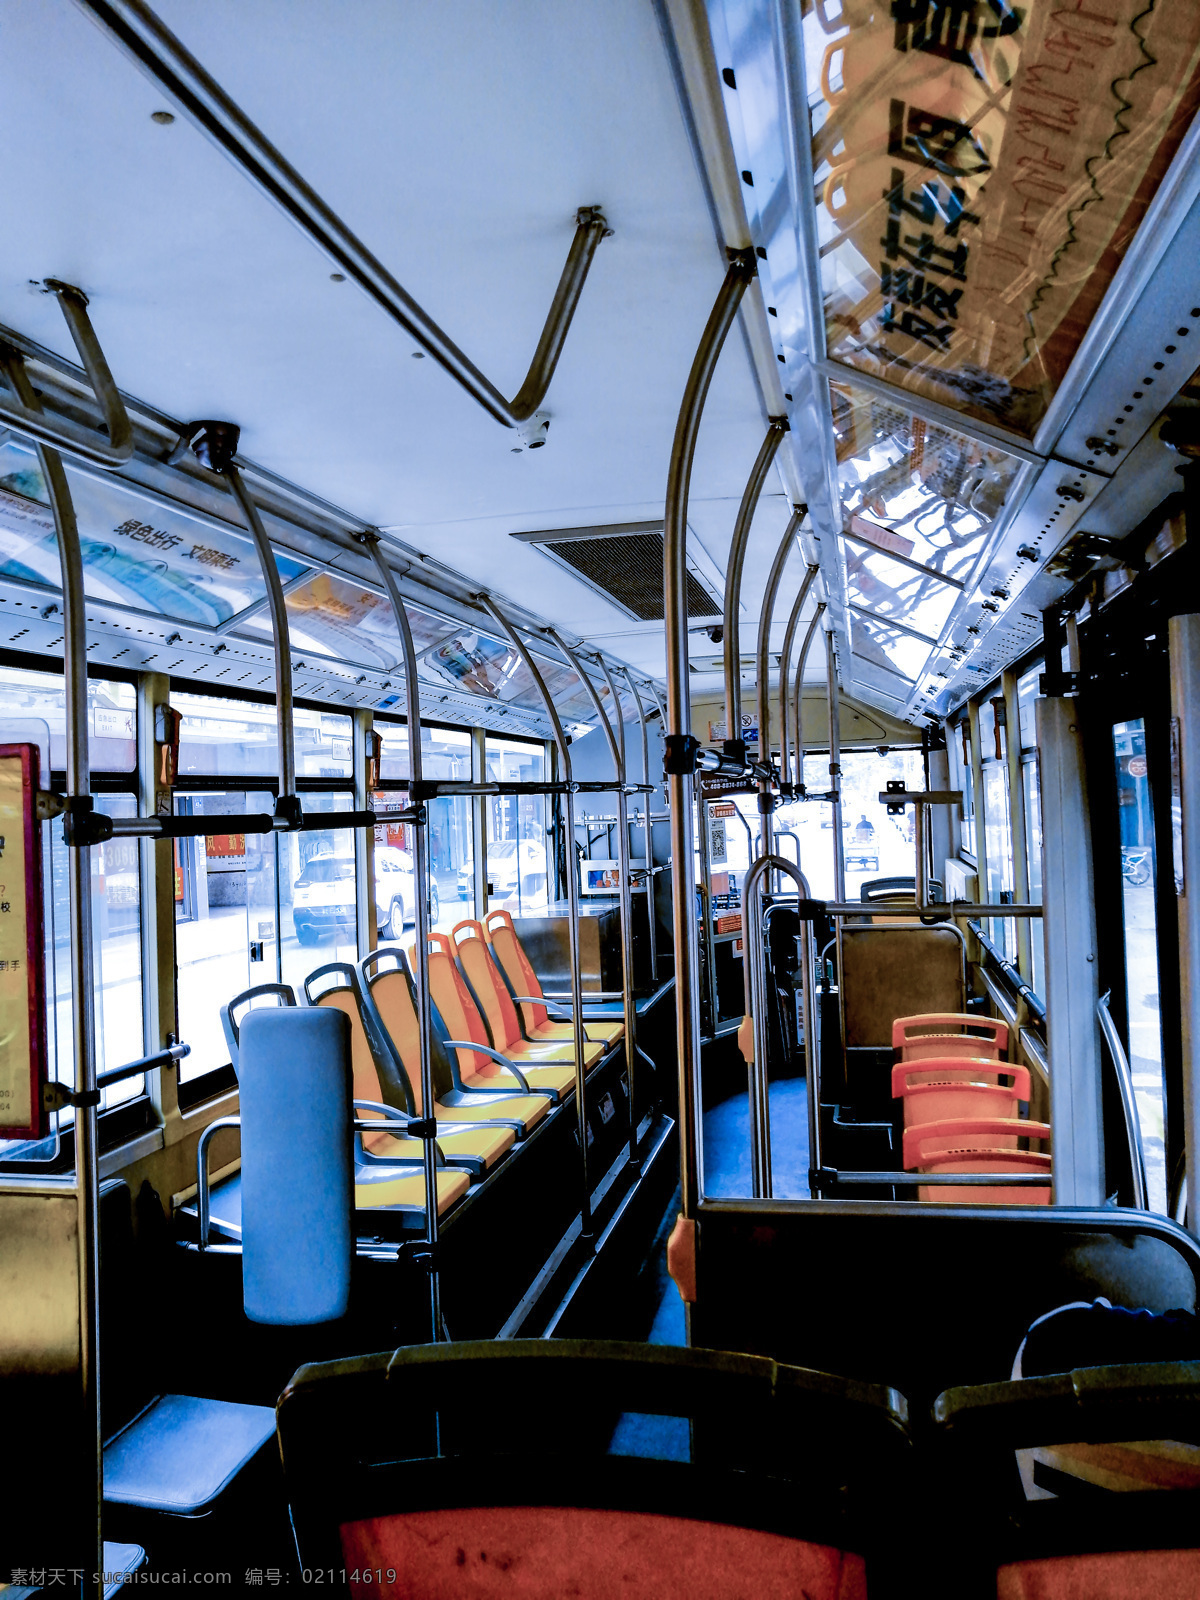 公交车上 位置 公交车 车上 座位 壁纸素材 过客 空座位 离别 自然景观 自然风景